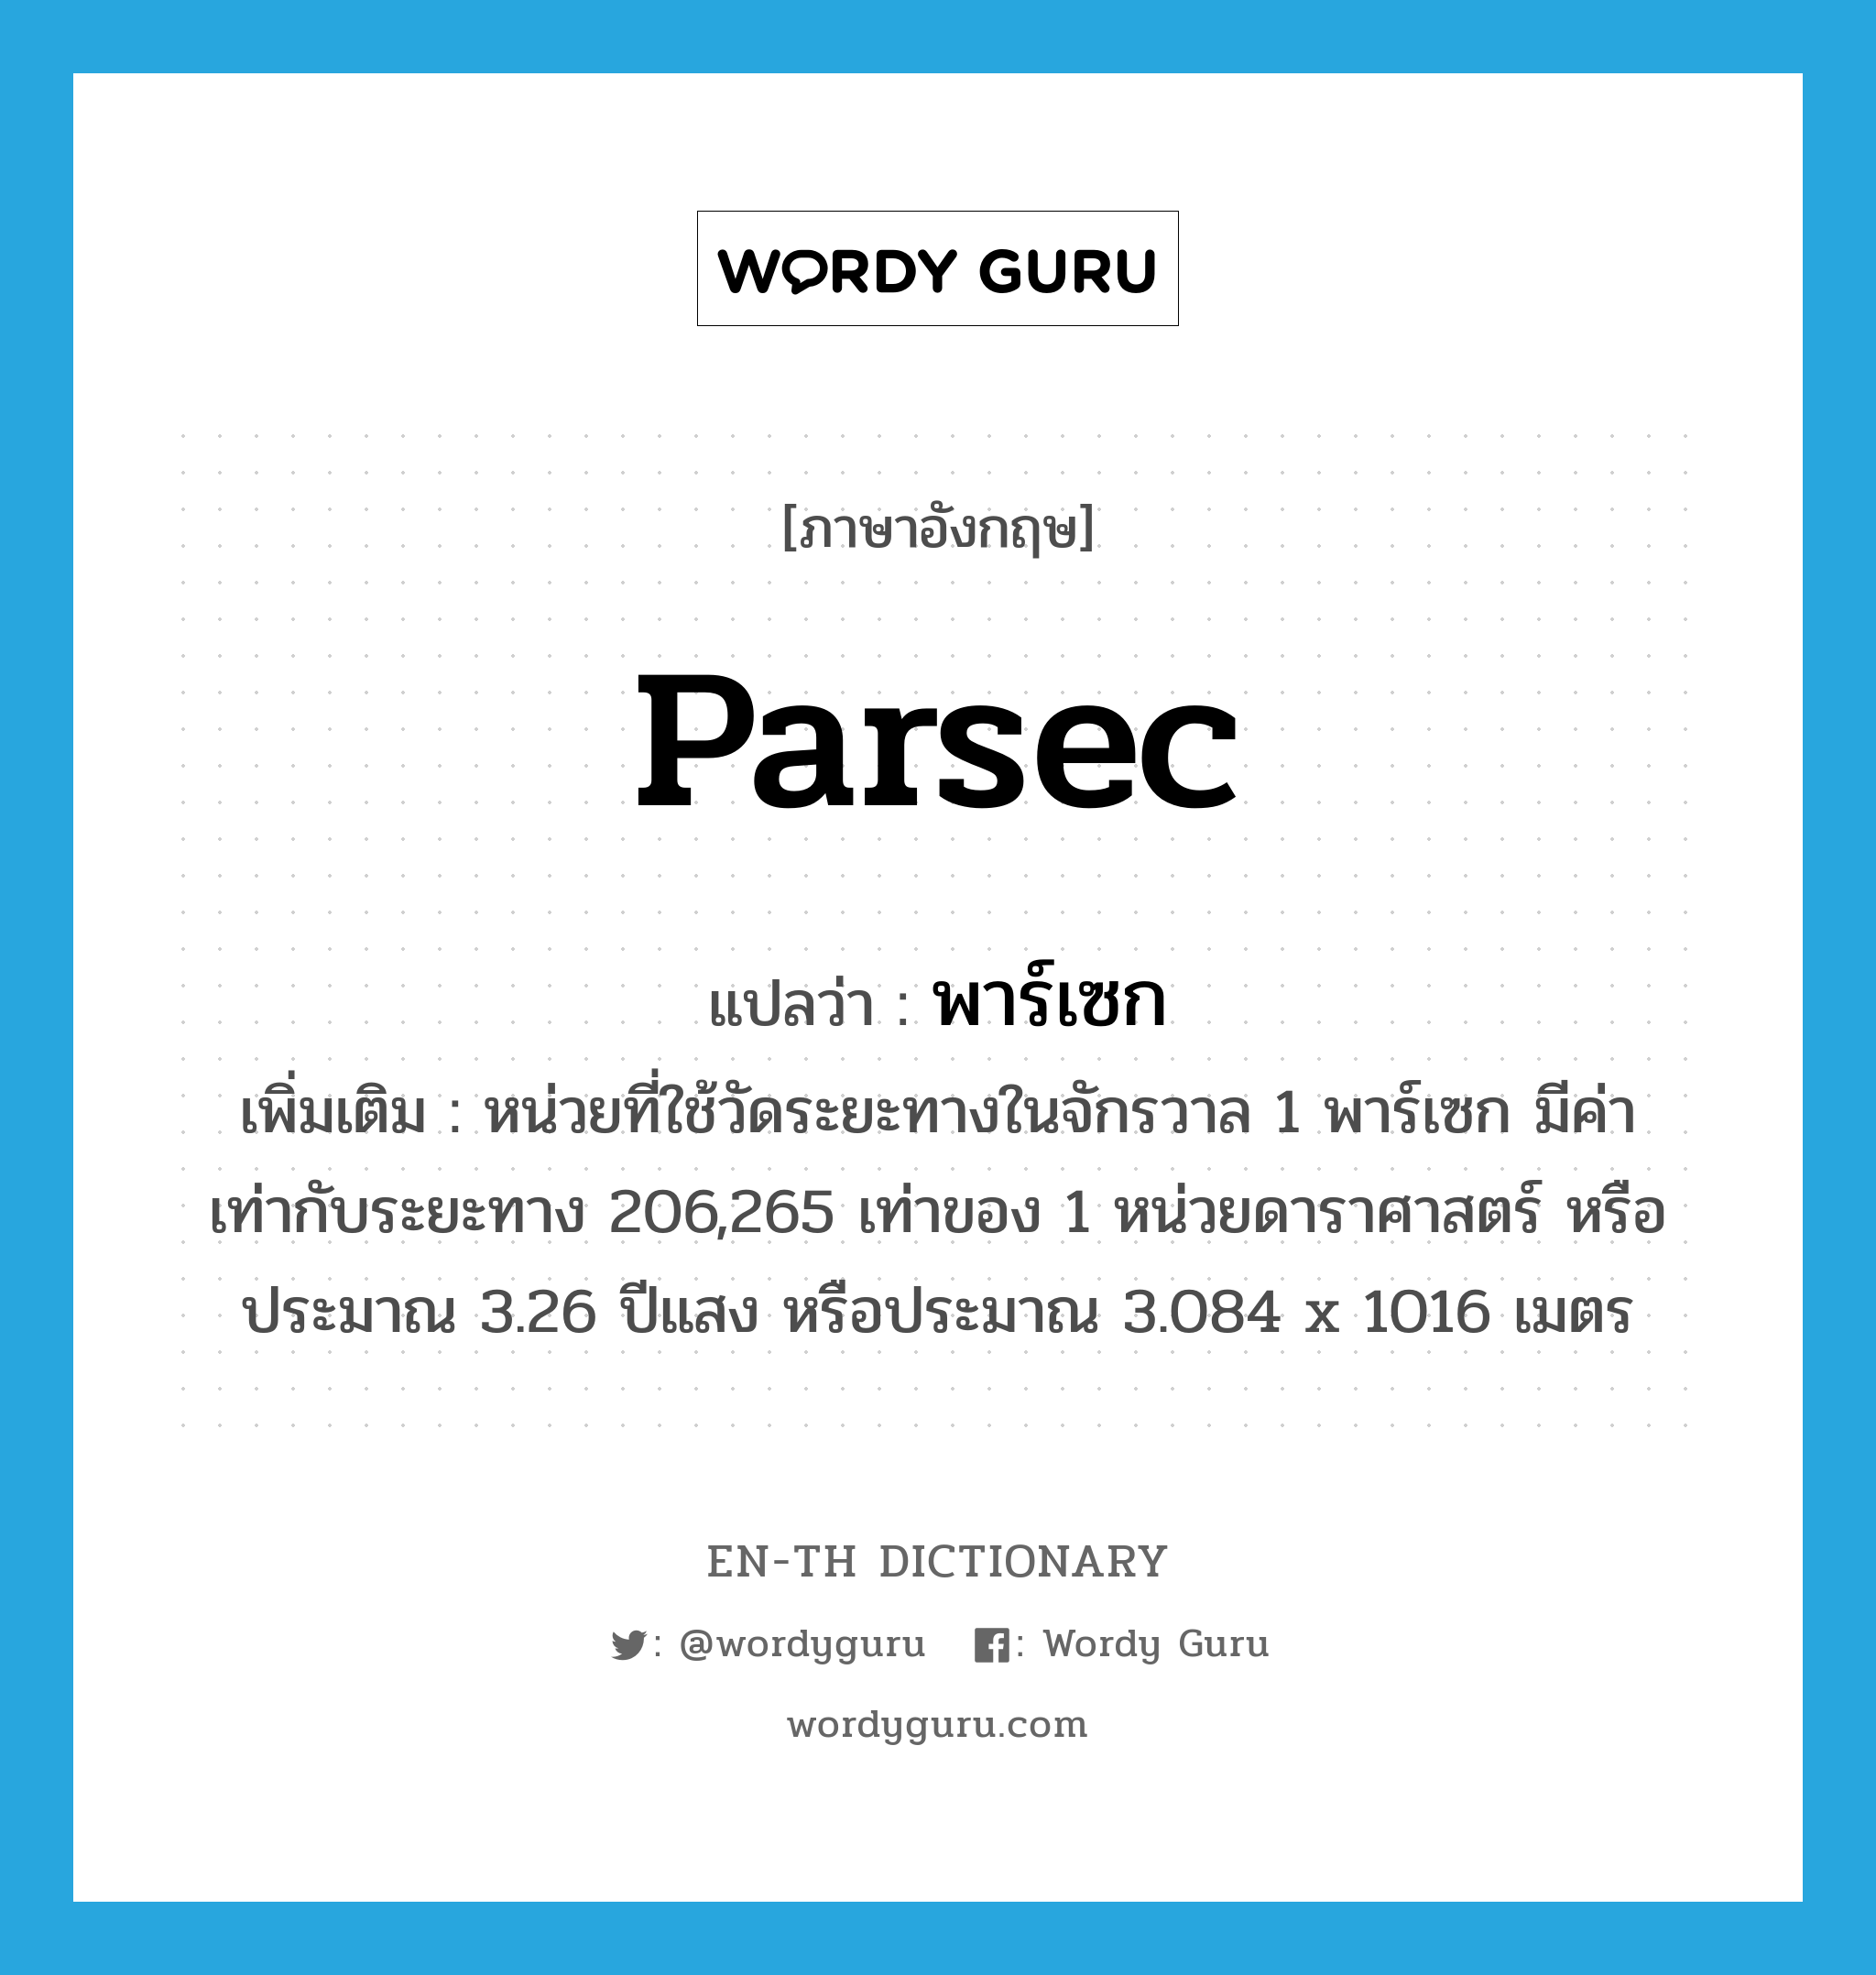 parsec แปลว่า? คำศัพท์ในกลุ่มประเภท CLAS, คำศัพท์ภาษาอังกฤษ parsec แปลว่า พาร์เซก ประเภท CLAS เพิ่มเติม หน่วยที่ใช้วัดระยะทางในจักรวาล 1 พาร์เซก มีค่าเท่ากับระยะทาง 206,265 เท่าของ 1 หน่วยดาราศาสตร์ หรือประมาณ 3.26 ปีแสง หรือประมาณ 3.084 x 1016 เมตร หมวด CLAS